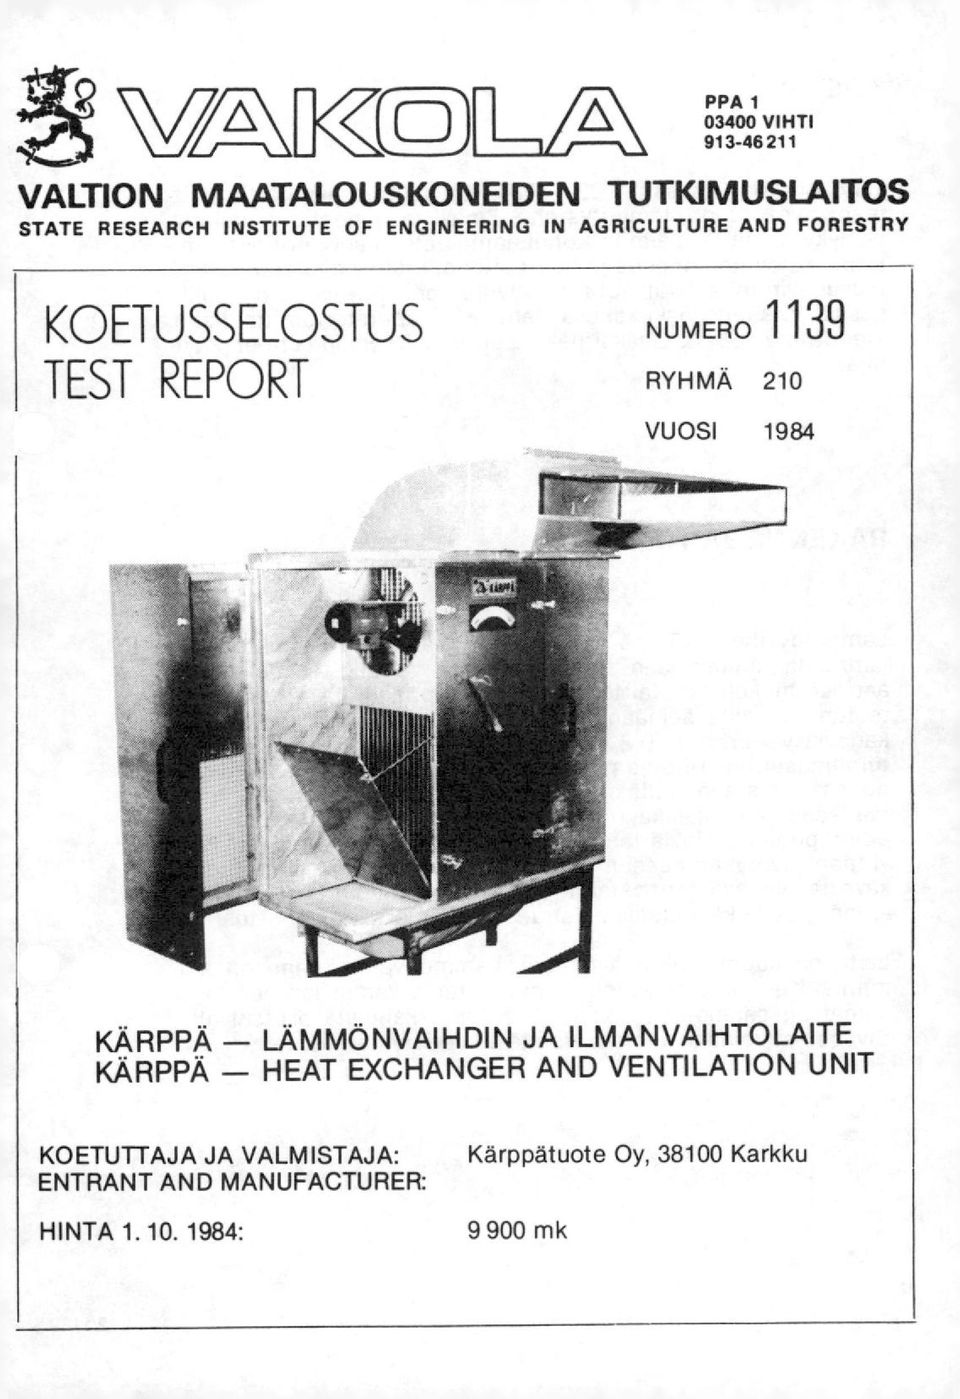 VUOSI 1984 "Mimier~ KÄRPPÄ - LÄMMÖNVAIHDIN JA ILMANVAIHTOLAITE KÄRPPÄ - HEAT EXCHANGER AND VENTILATION